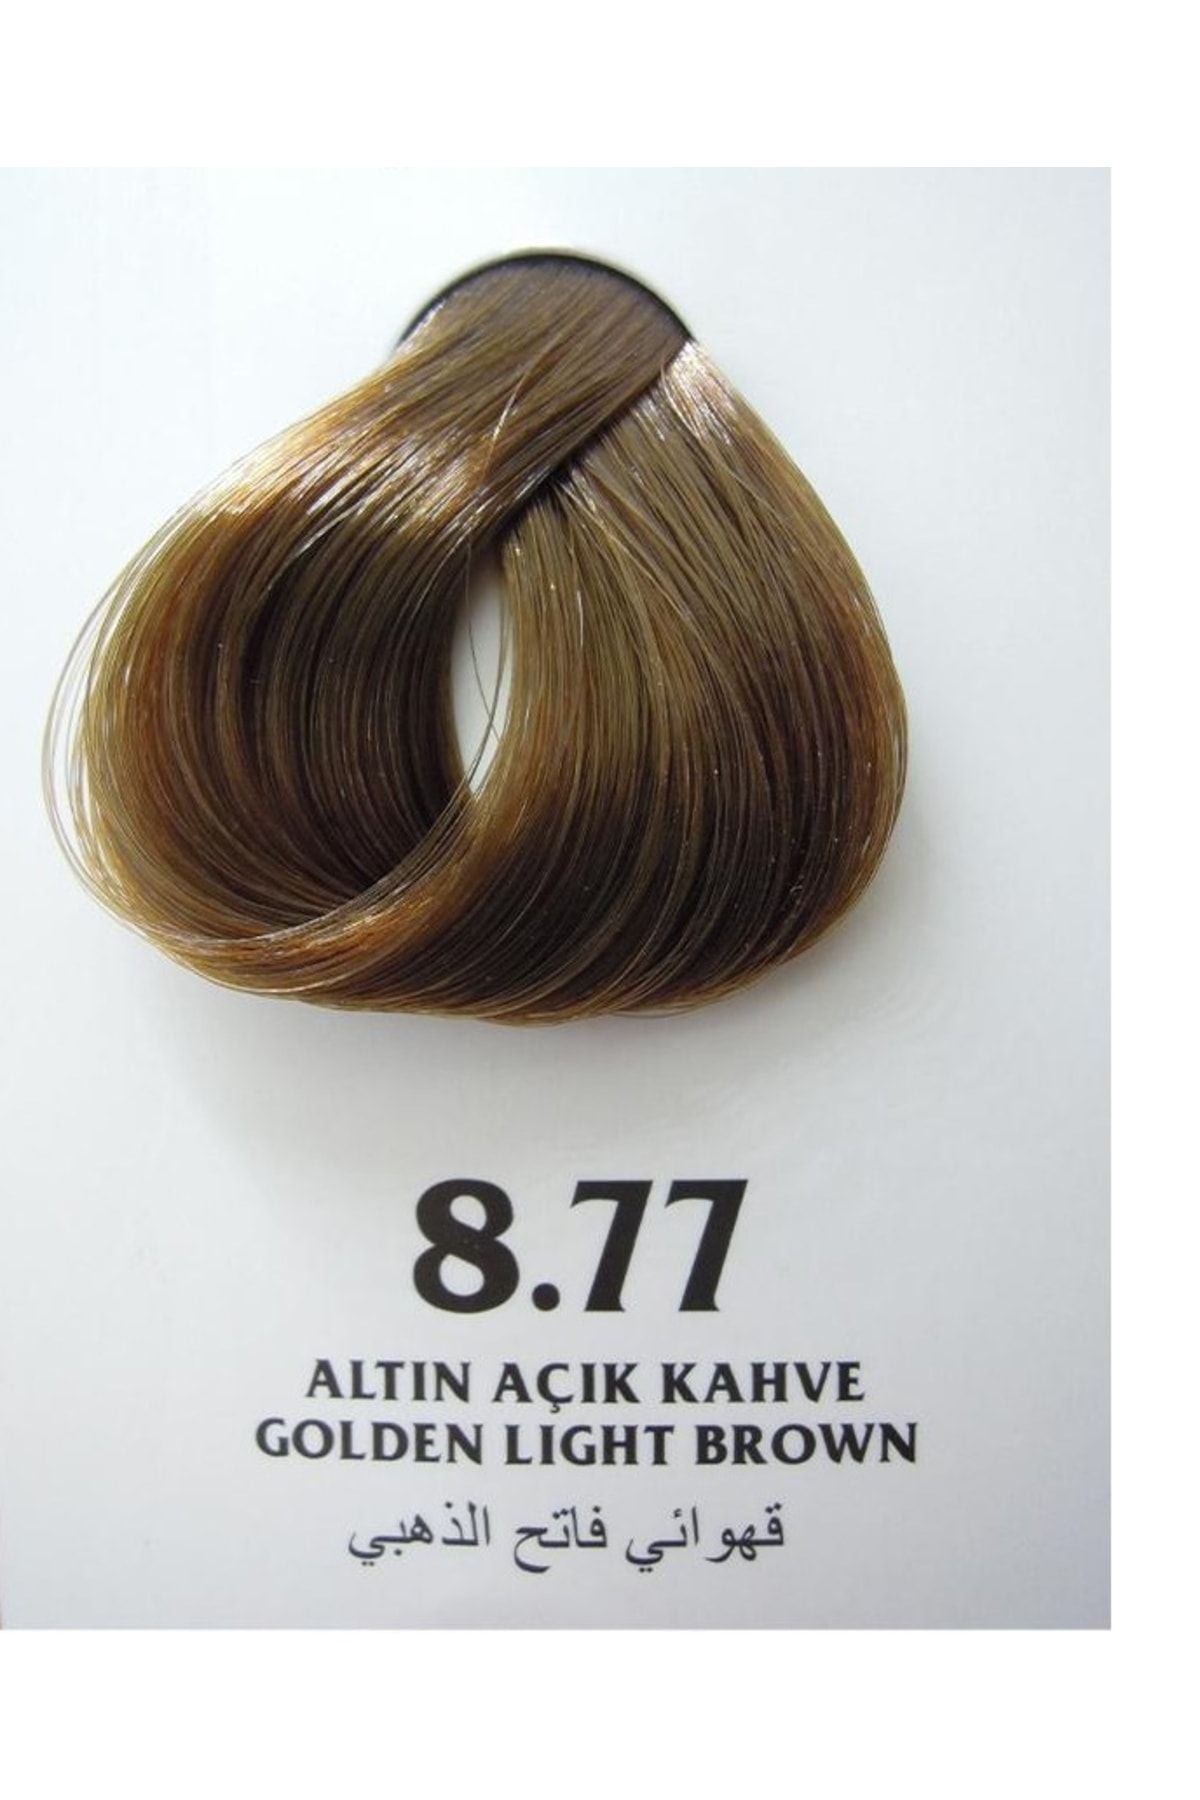 Clemency Farmavita Saç Boyası Altın Açık Kahve 8.77 60gr.